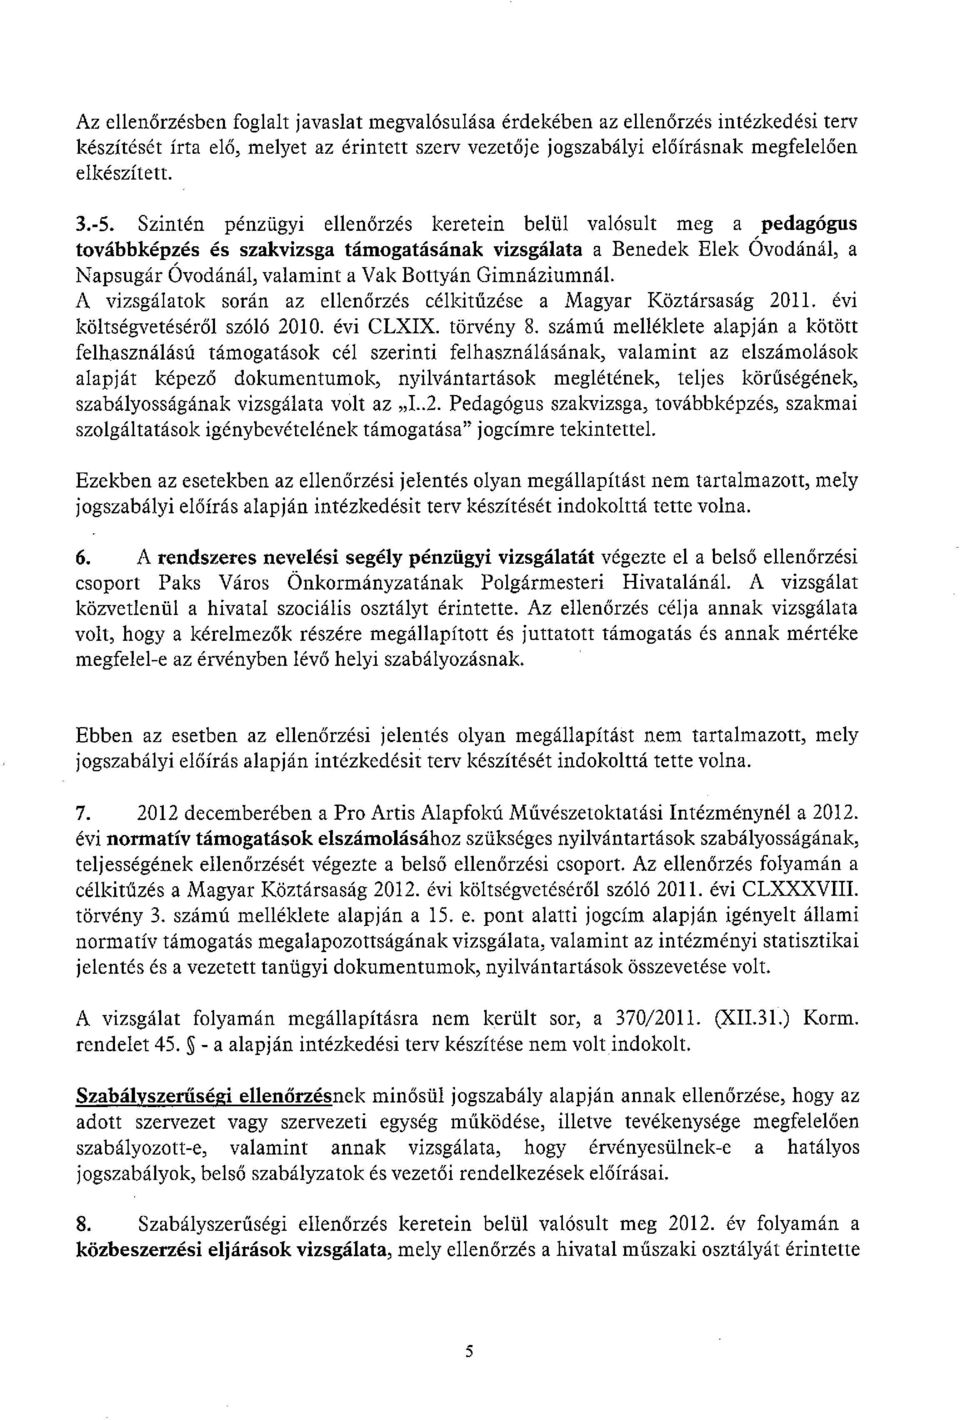 Gimnáziumnál. A vizsgálatok során az ellenőrzés célkitűzése a Magyar Köztársaság 2011. évi költségvetéséről szóló 2010. évi CLXIX. törvény 8.